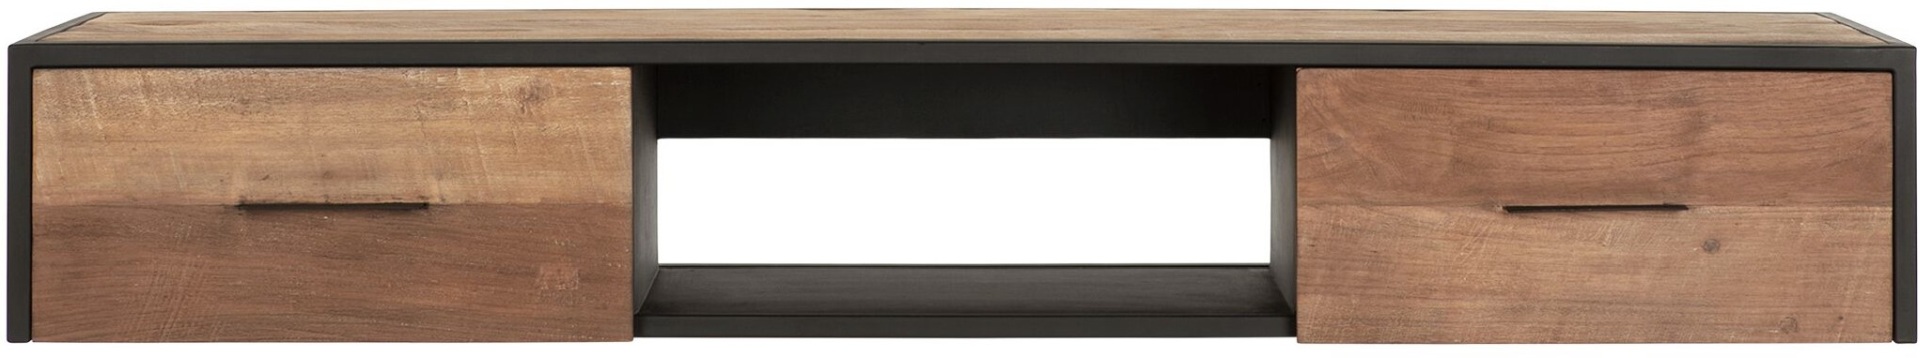 Das TV-Board Elemental überzeugt mit seinem modernem Design. Gefertigt wurde es aus Teakholz, welches einen natürlichen Farbton besitzt. Das Board verfügt über zwei Schubladen und ein offenes Fach. Es besitzt eine Breite von 160 cm.